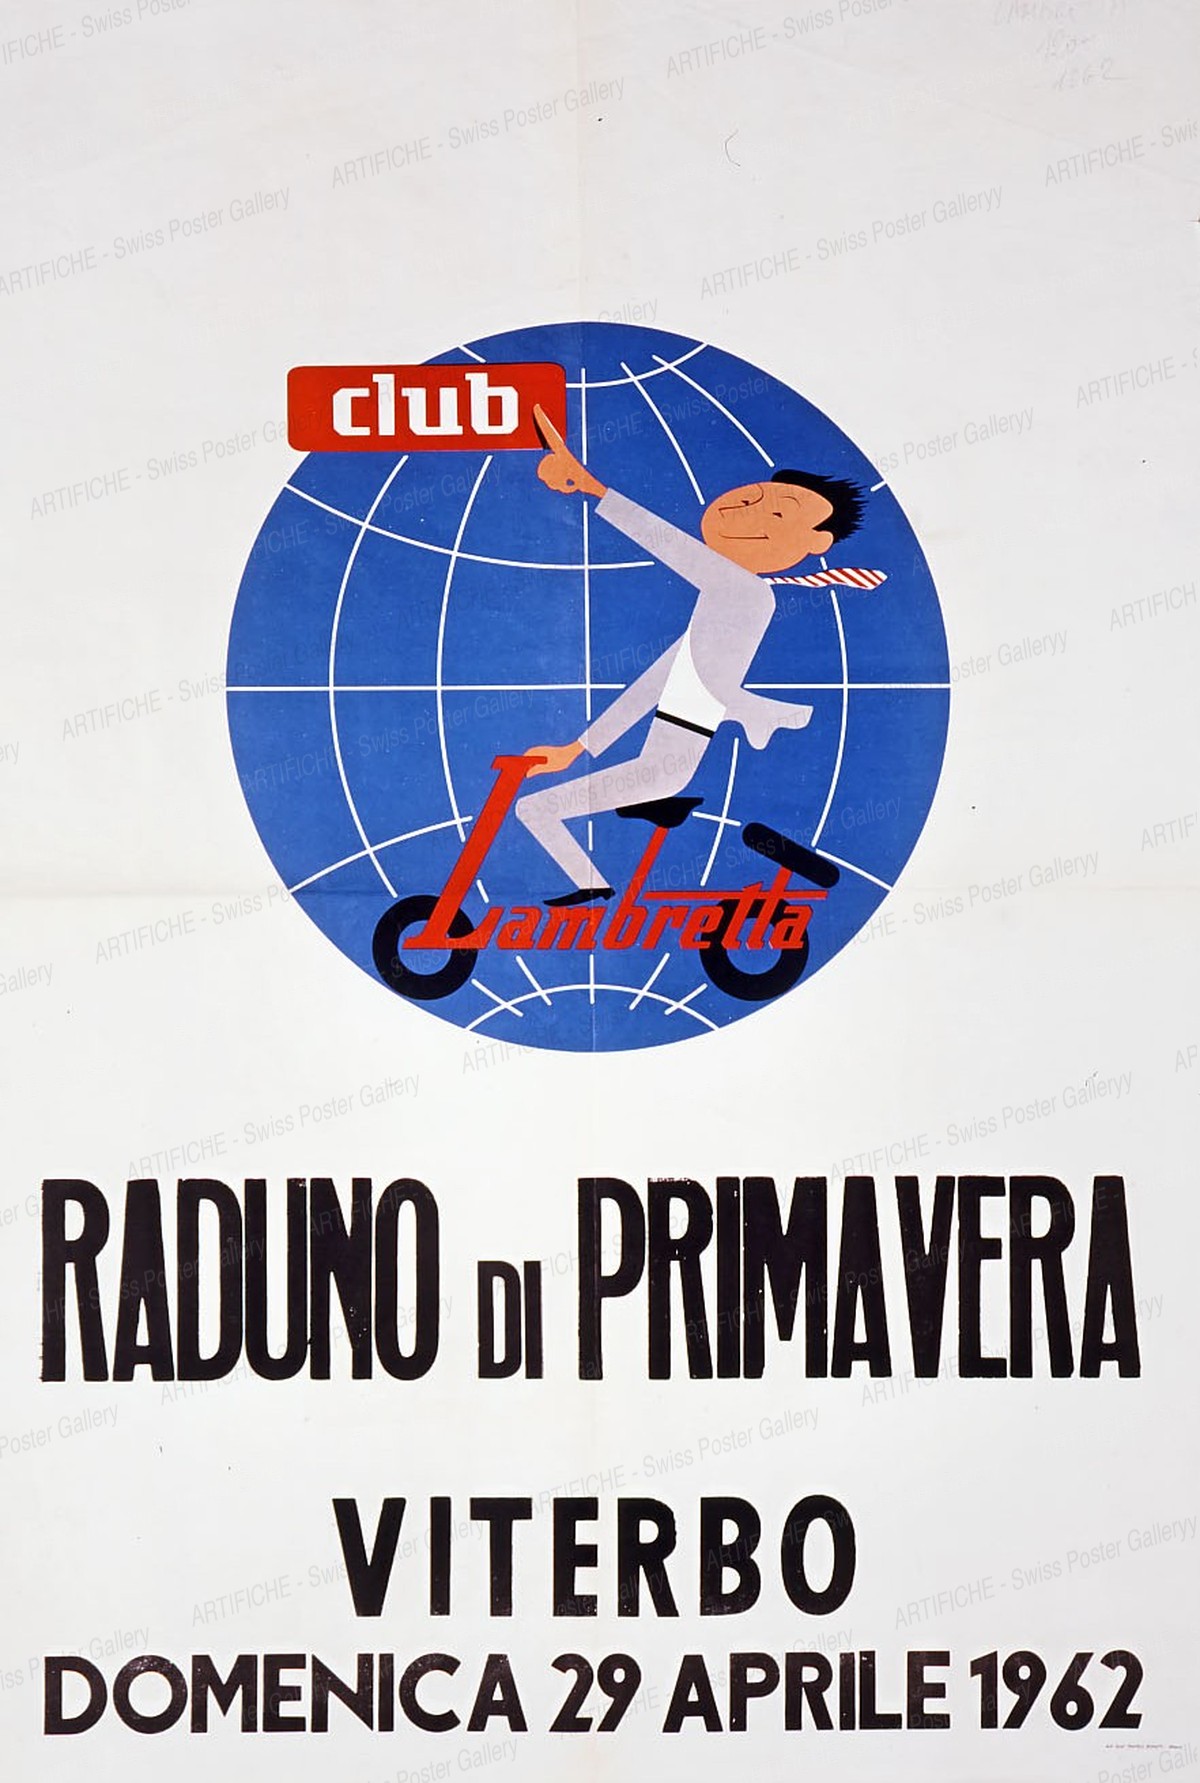 Lambretta club – RADUNO DI PRIMAVERA VITERBO, Milano Flle Bonetti